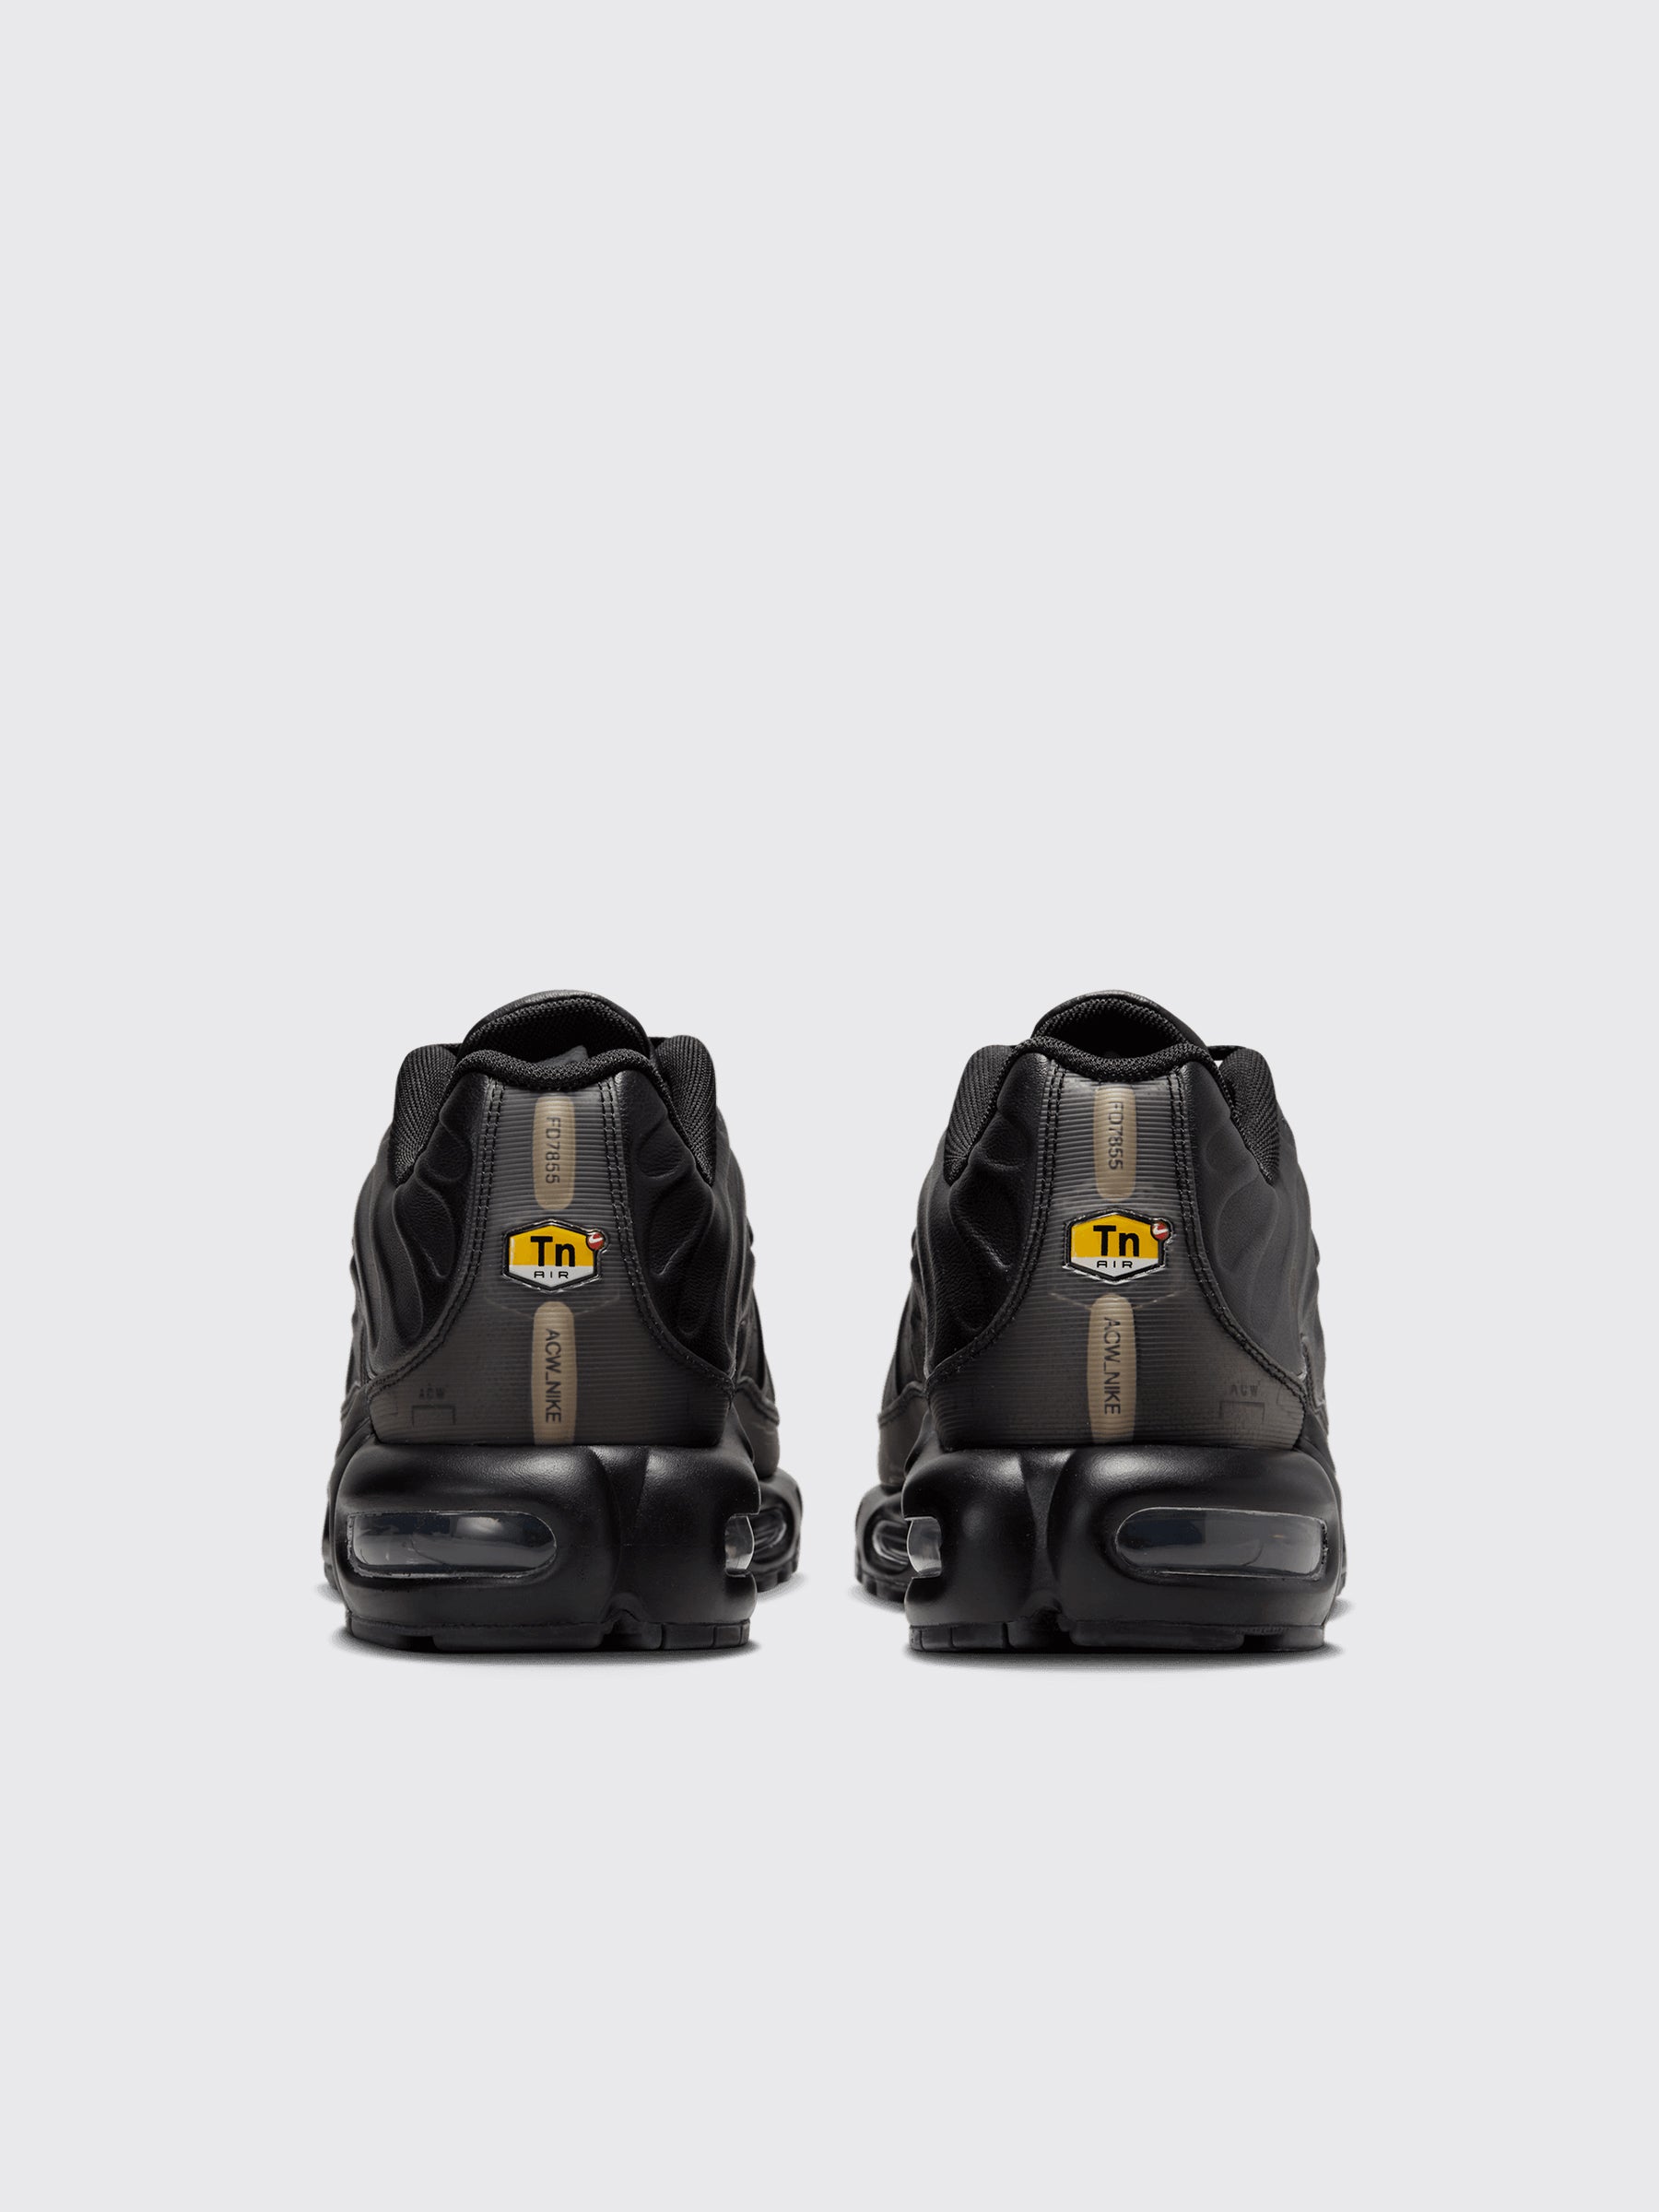 Nike x A-COLD-WALL* Air Max Plus Black / Off Noir